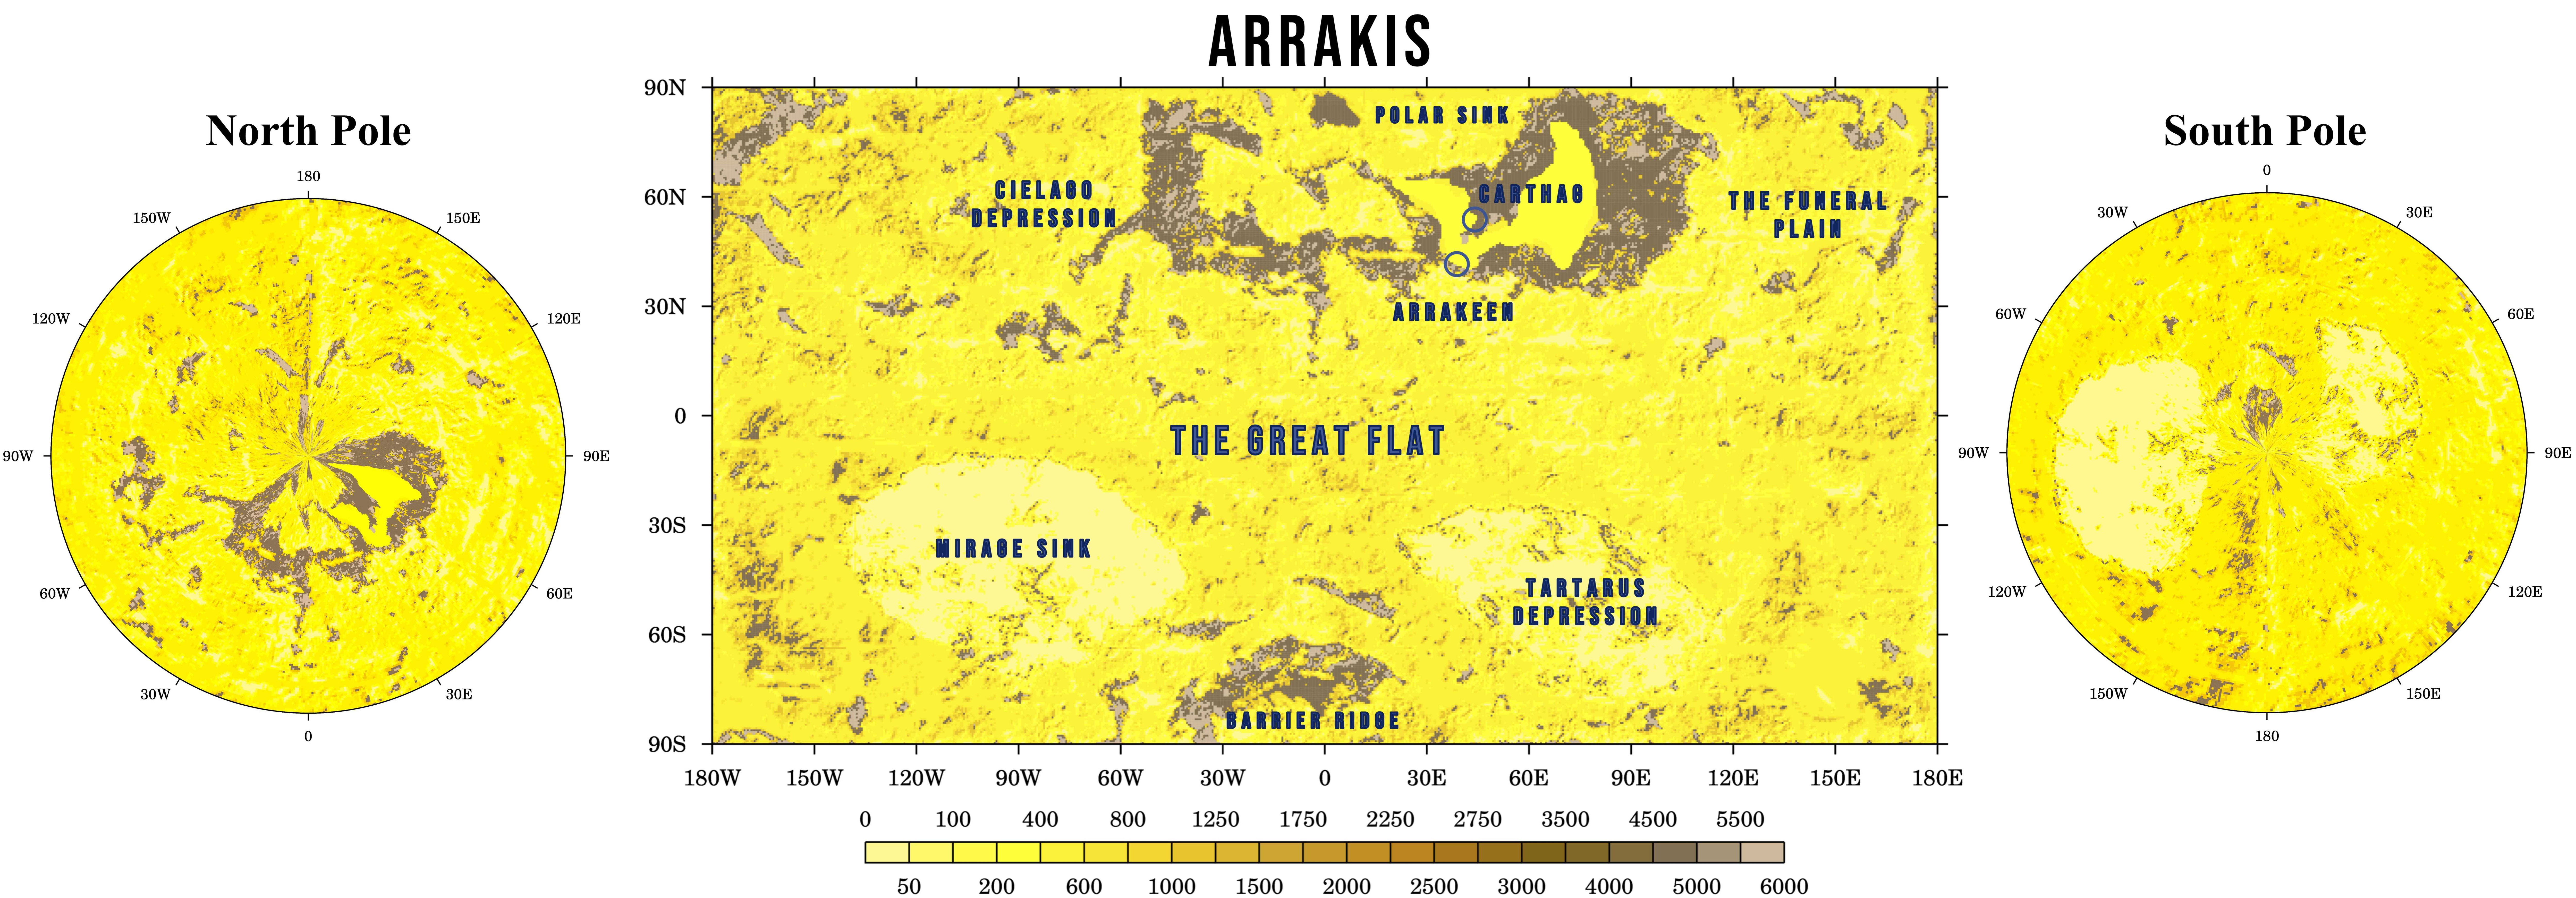 Дюна: мы сделали модель планеты Арракис, чтобы узнать, выживет ли там человек